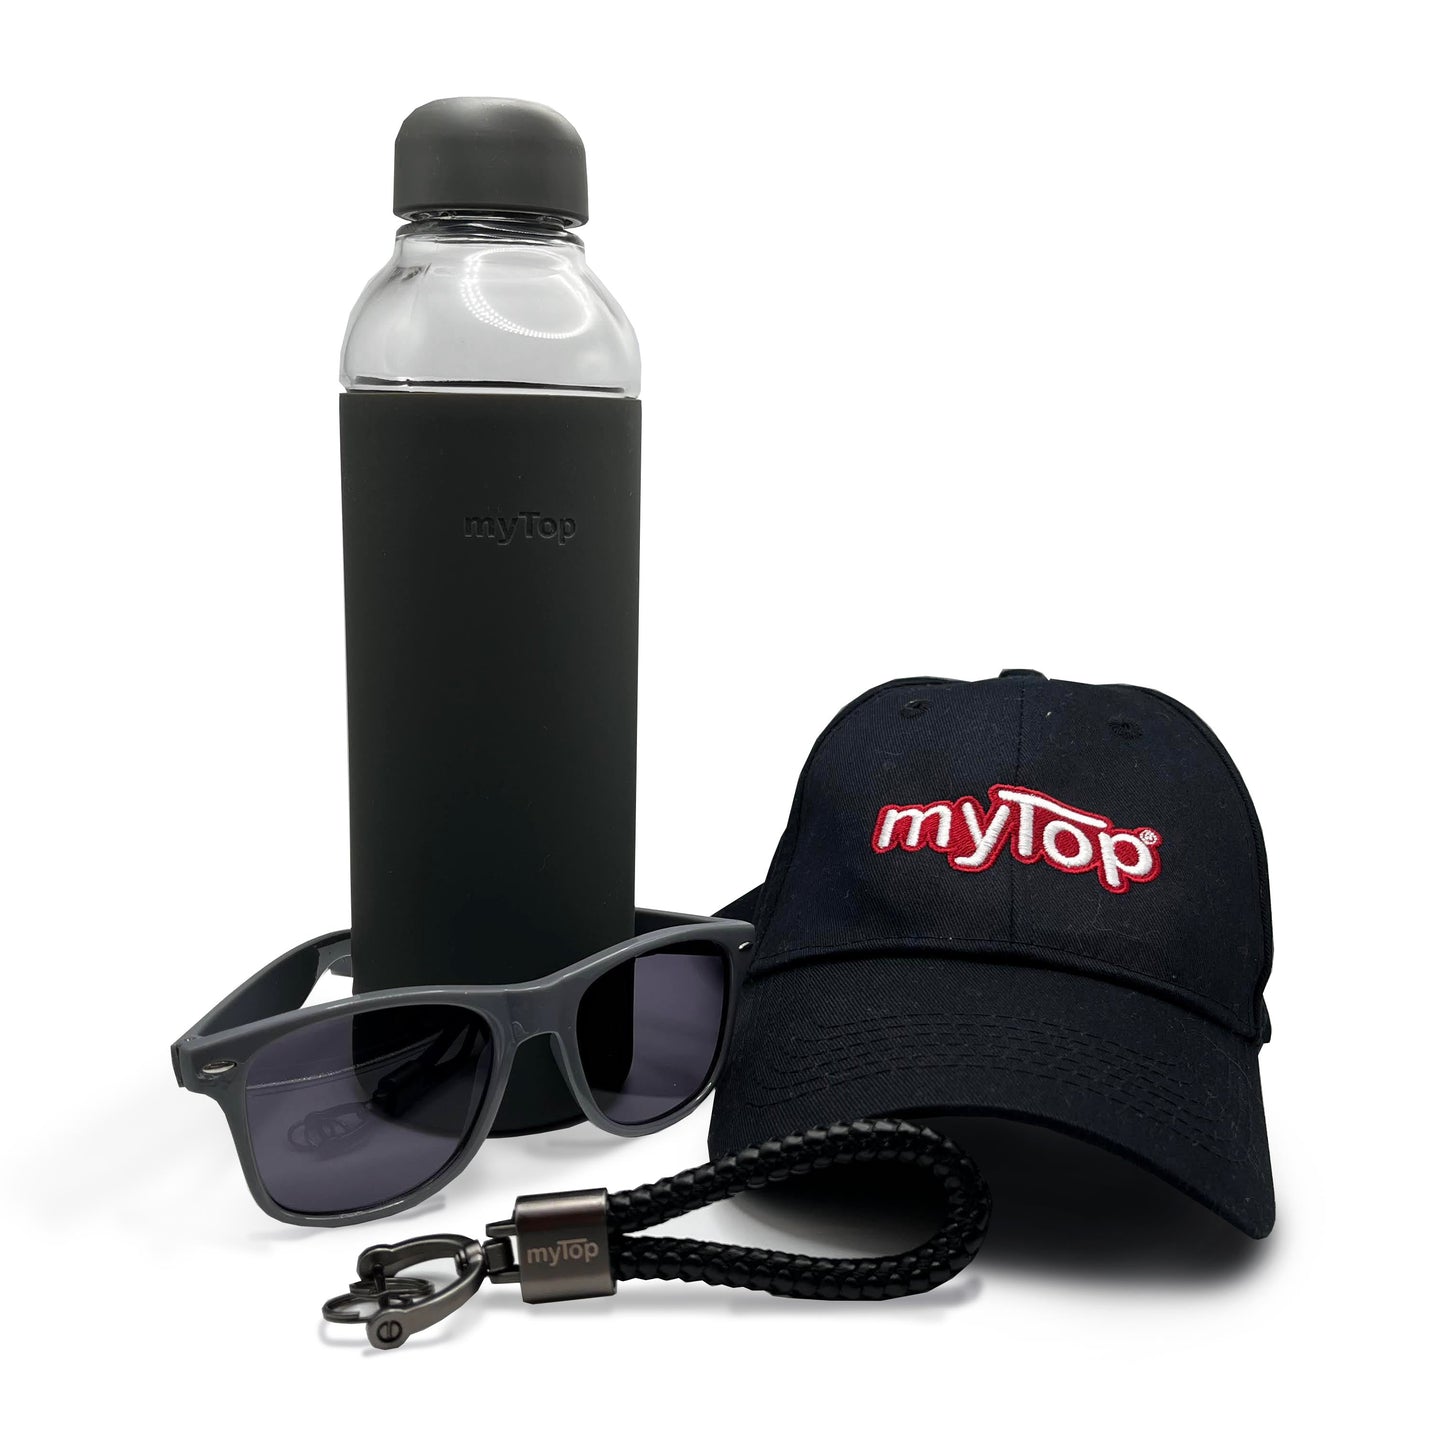 myTop Gift Pack